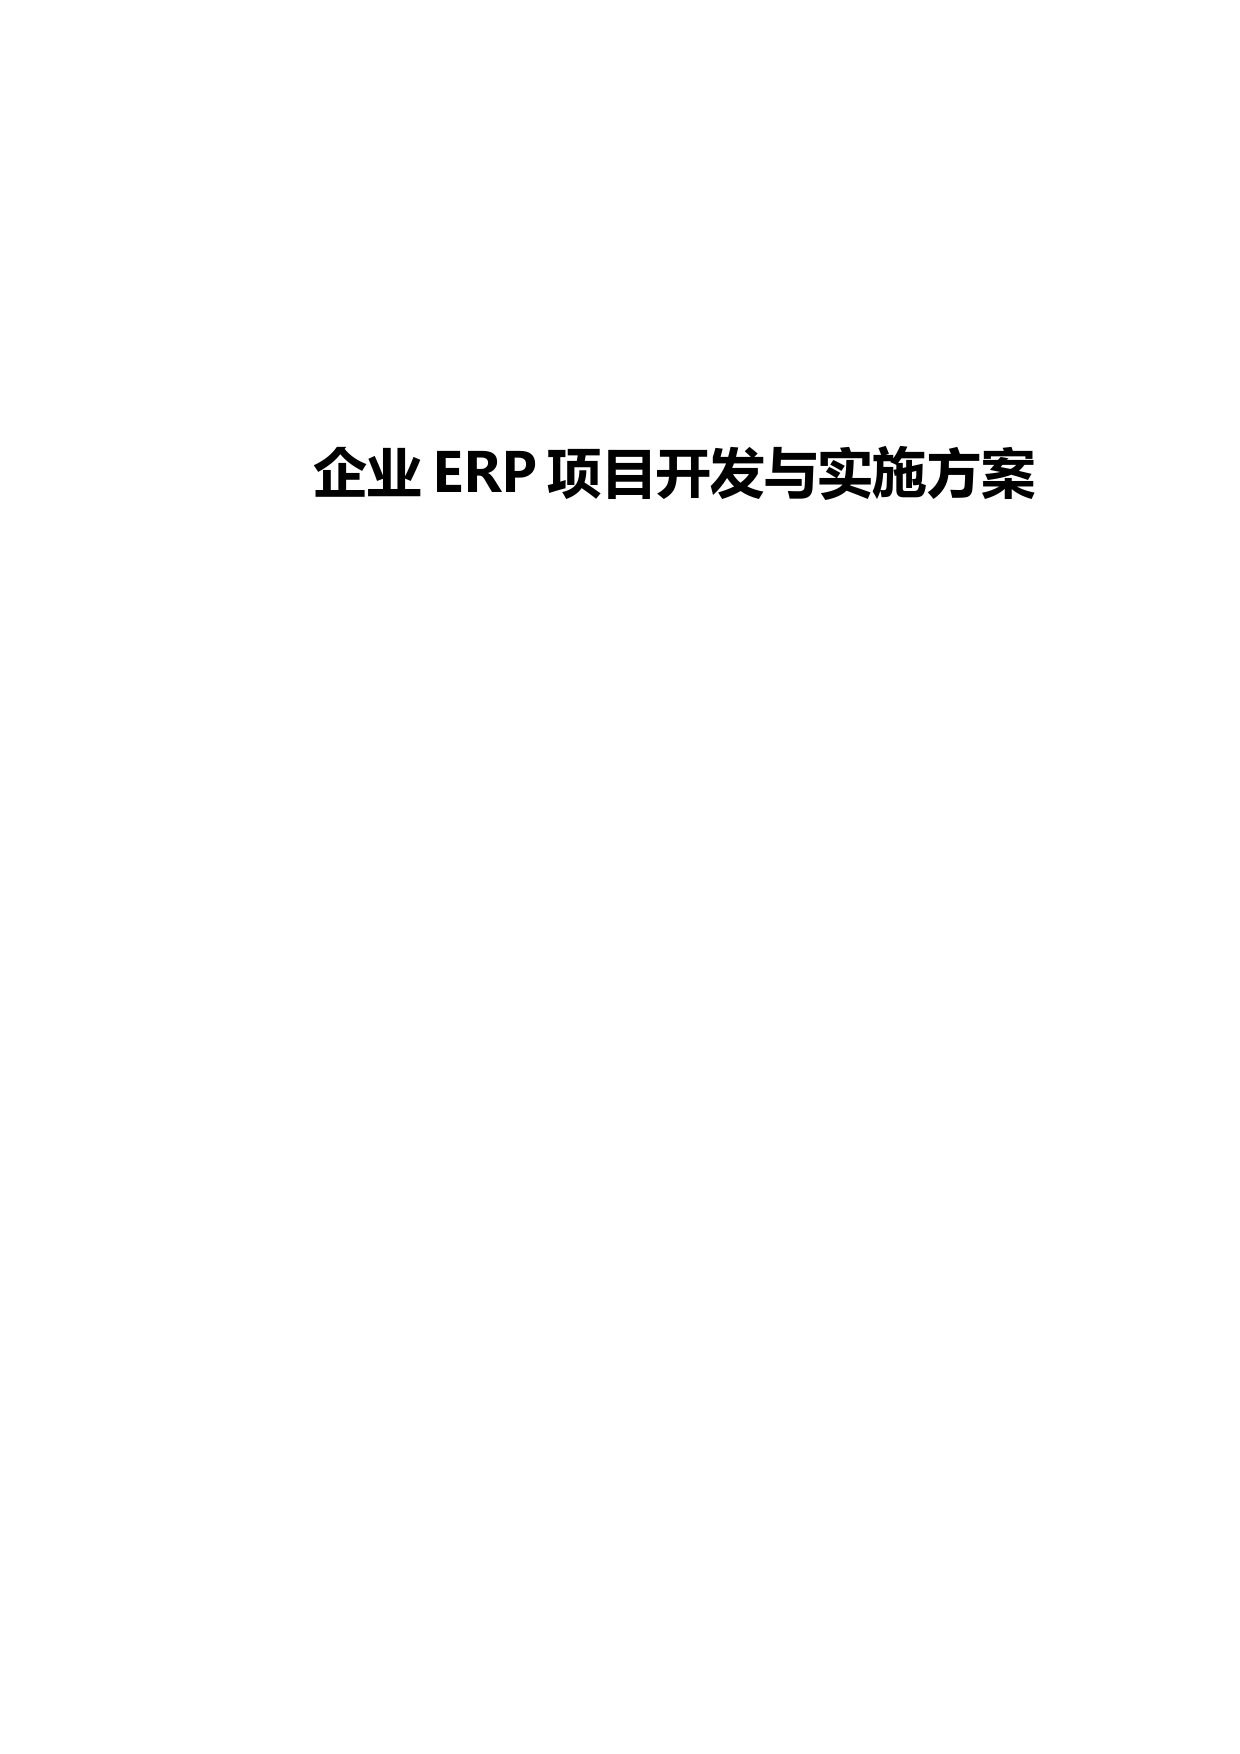 企业ERP项目开发与实施方案